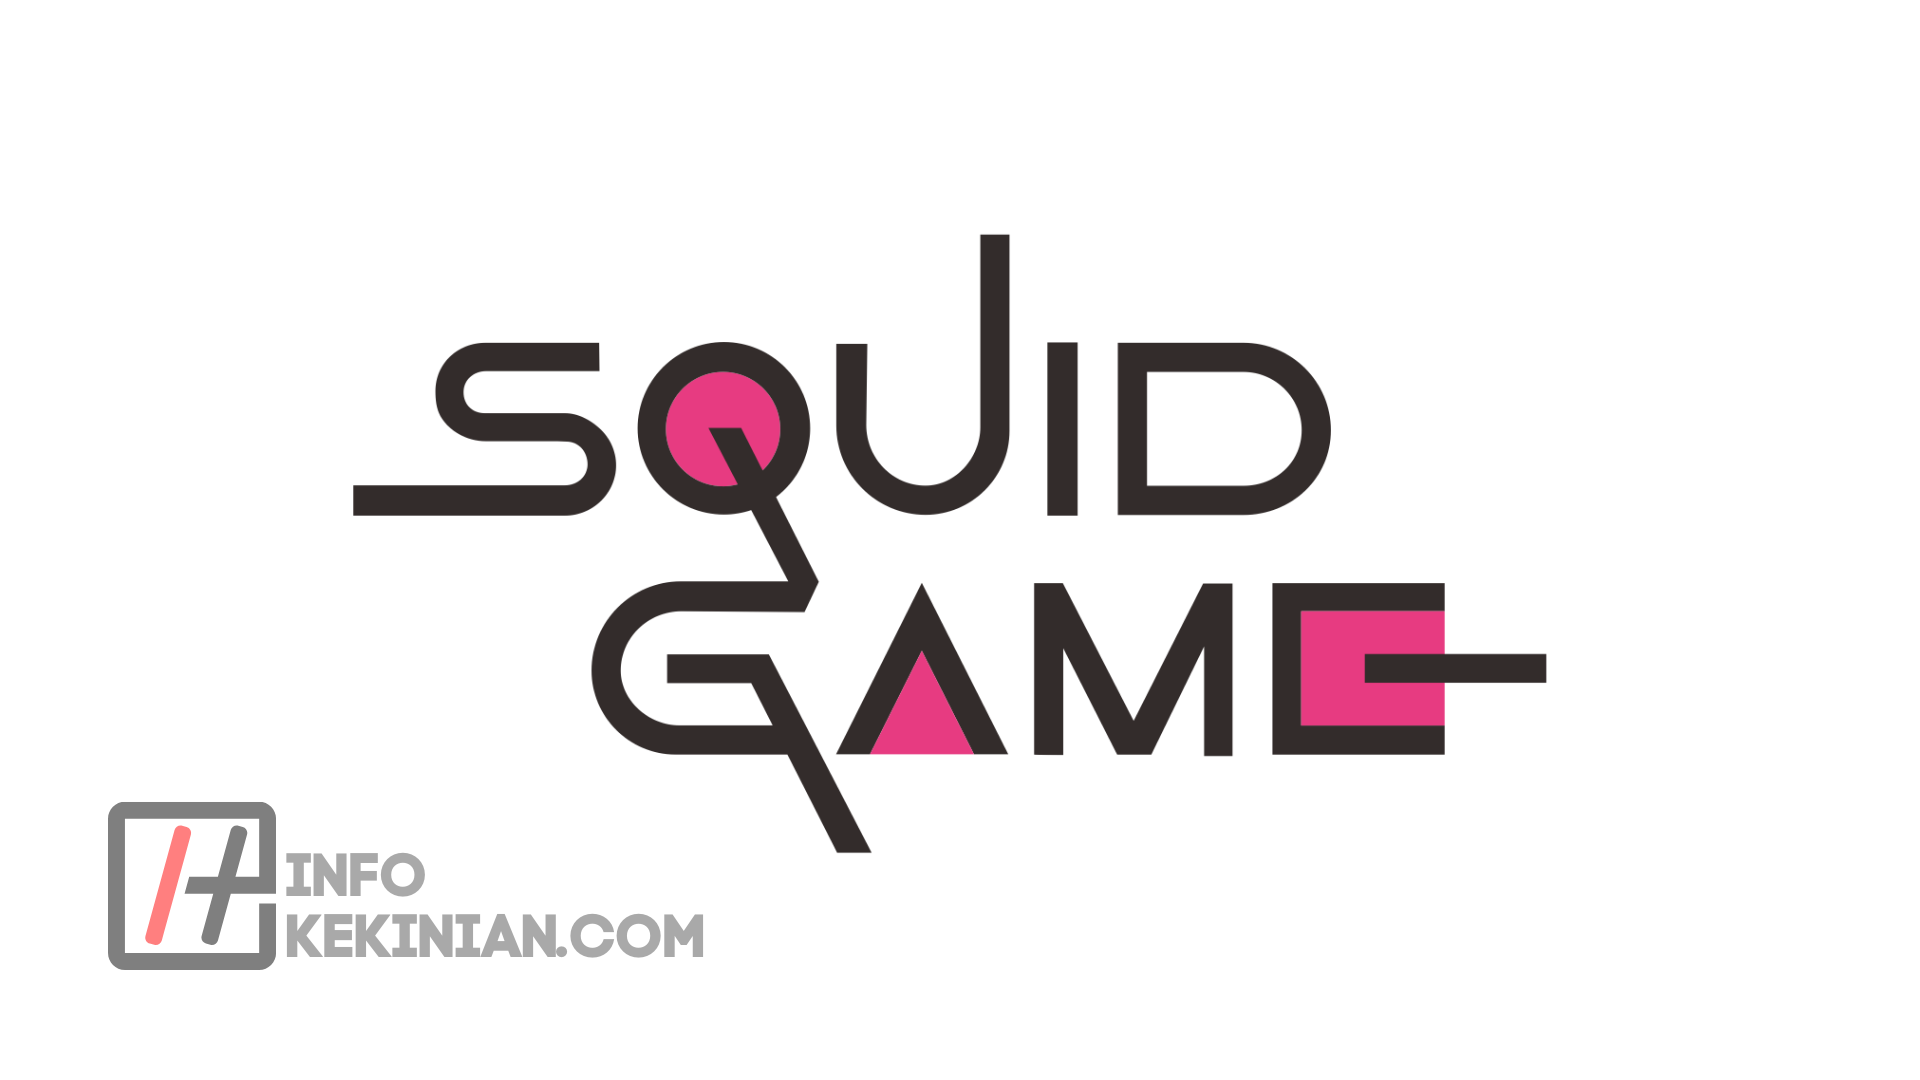 Squid game игра. Squid game logo. Squid game PNG. Squid game font. Squid game Stickers.